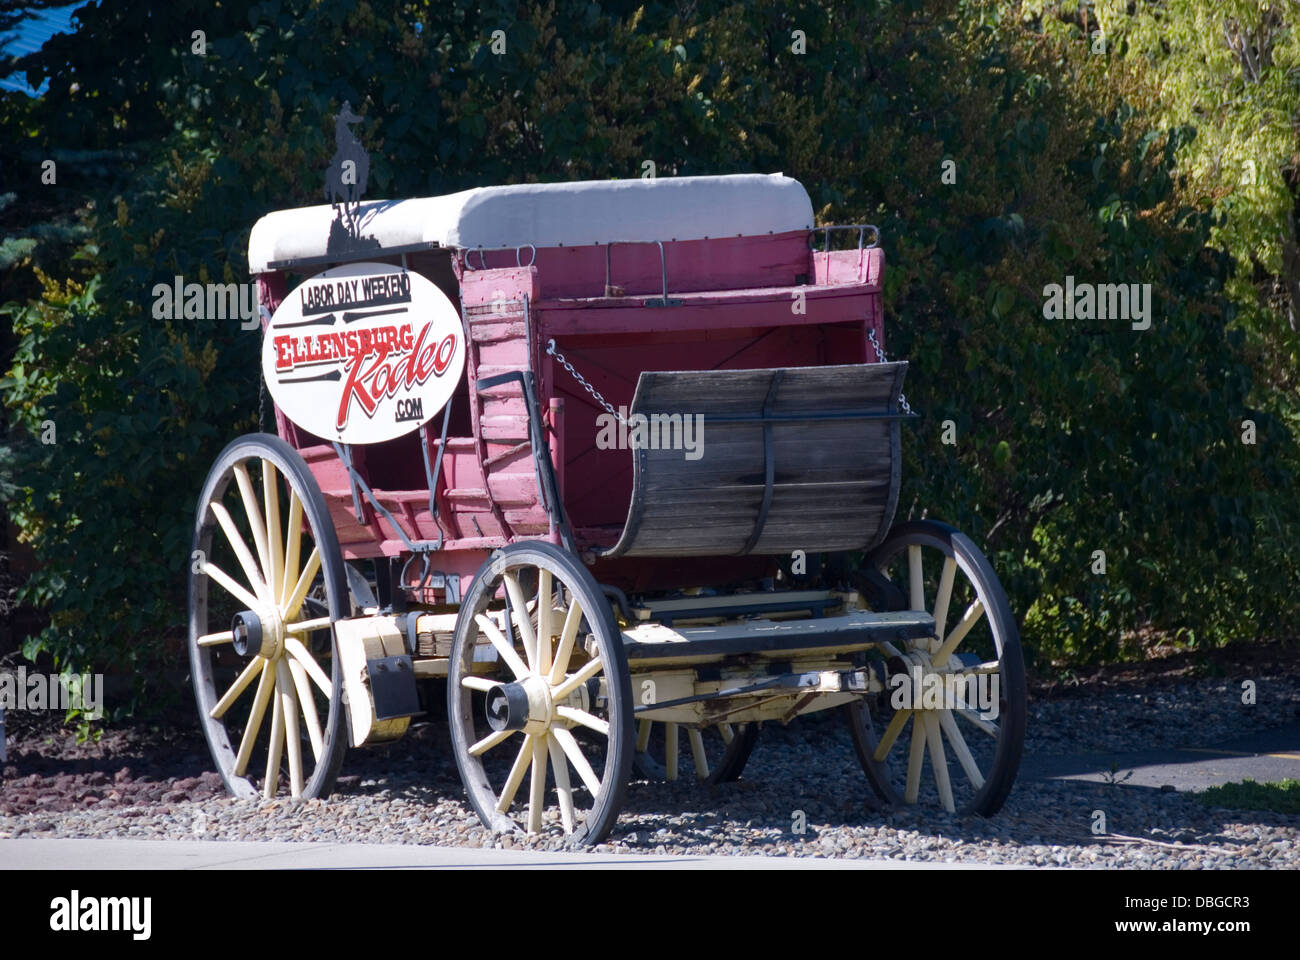 Wagon cart advertising Ellensburg Rodeo, Ellensburg, Kittitas County, Washington, WA, USA Stock Photo